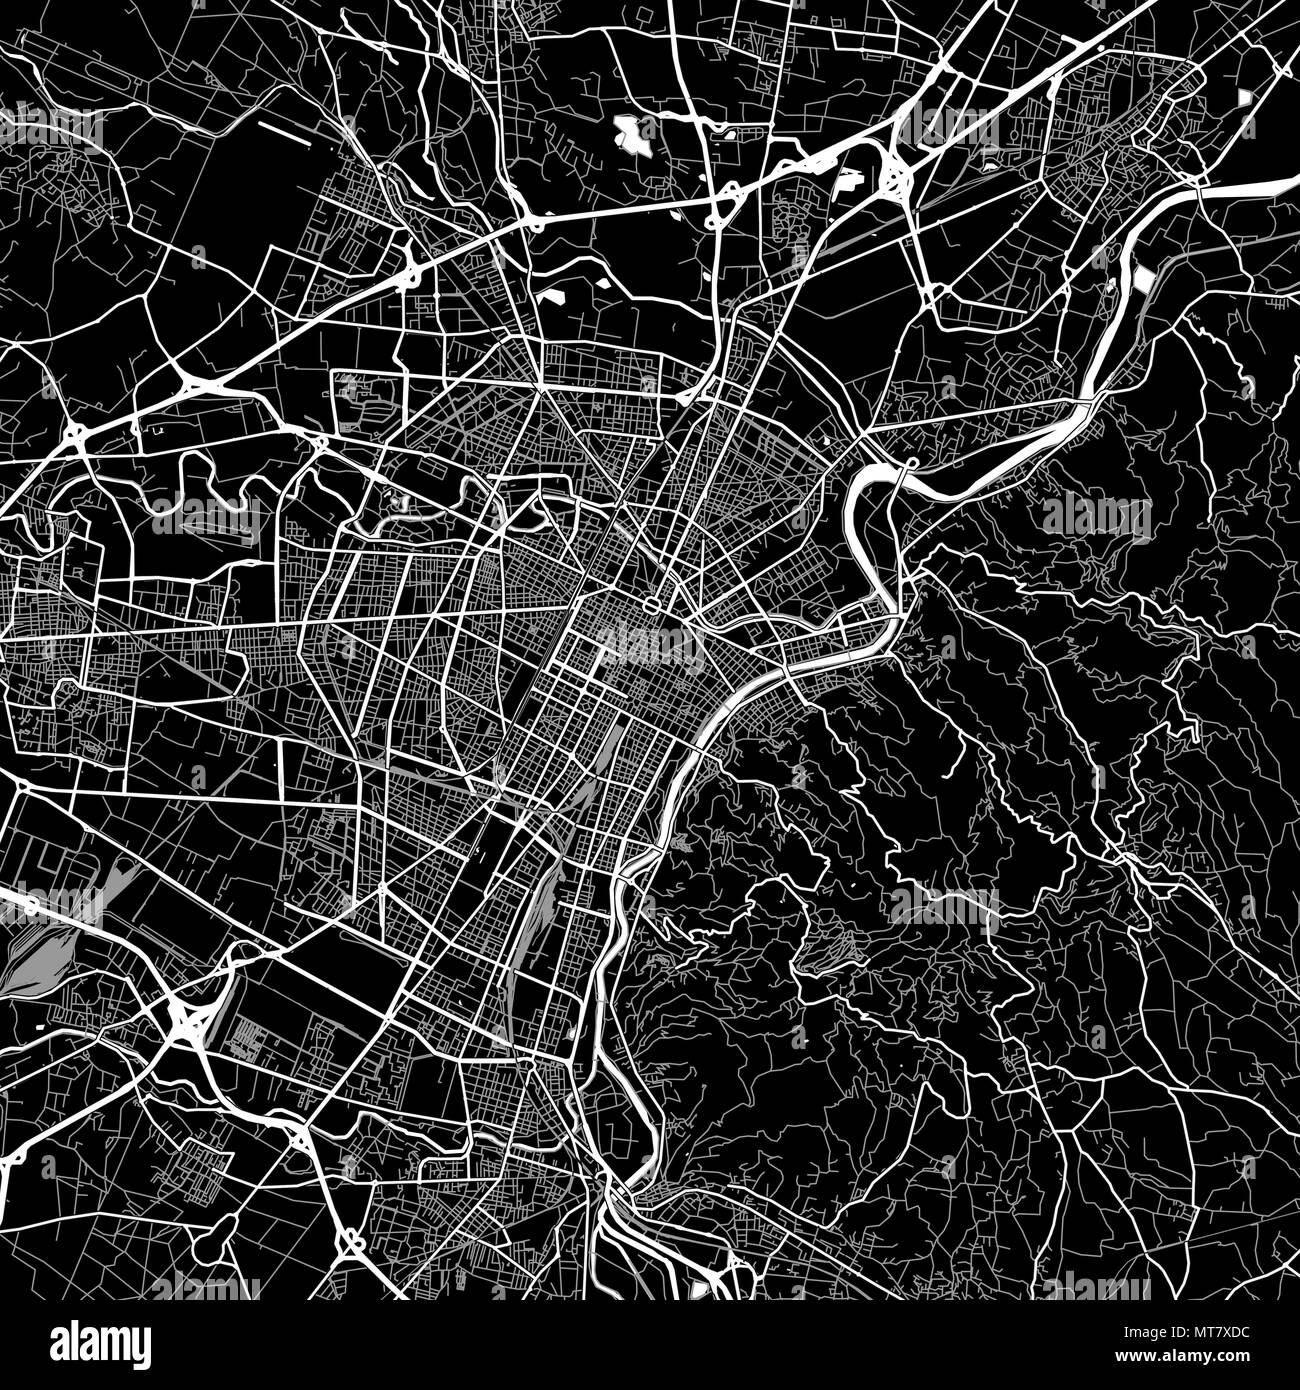 Lageplan von Turin, Italien. Der dunkle Hintergrund Version für Infografik und Marketing Projekte. Diese Karte von Turin, Piemont, enthält typische Sehenswürdigkeiten mit Stock Vektor